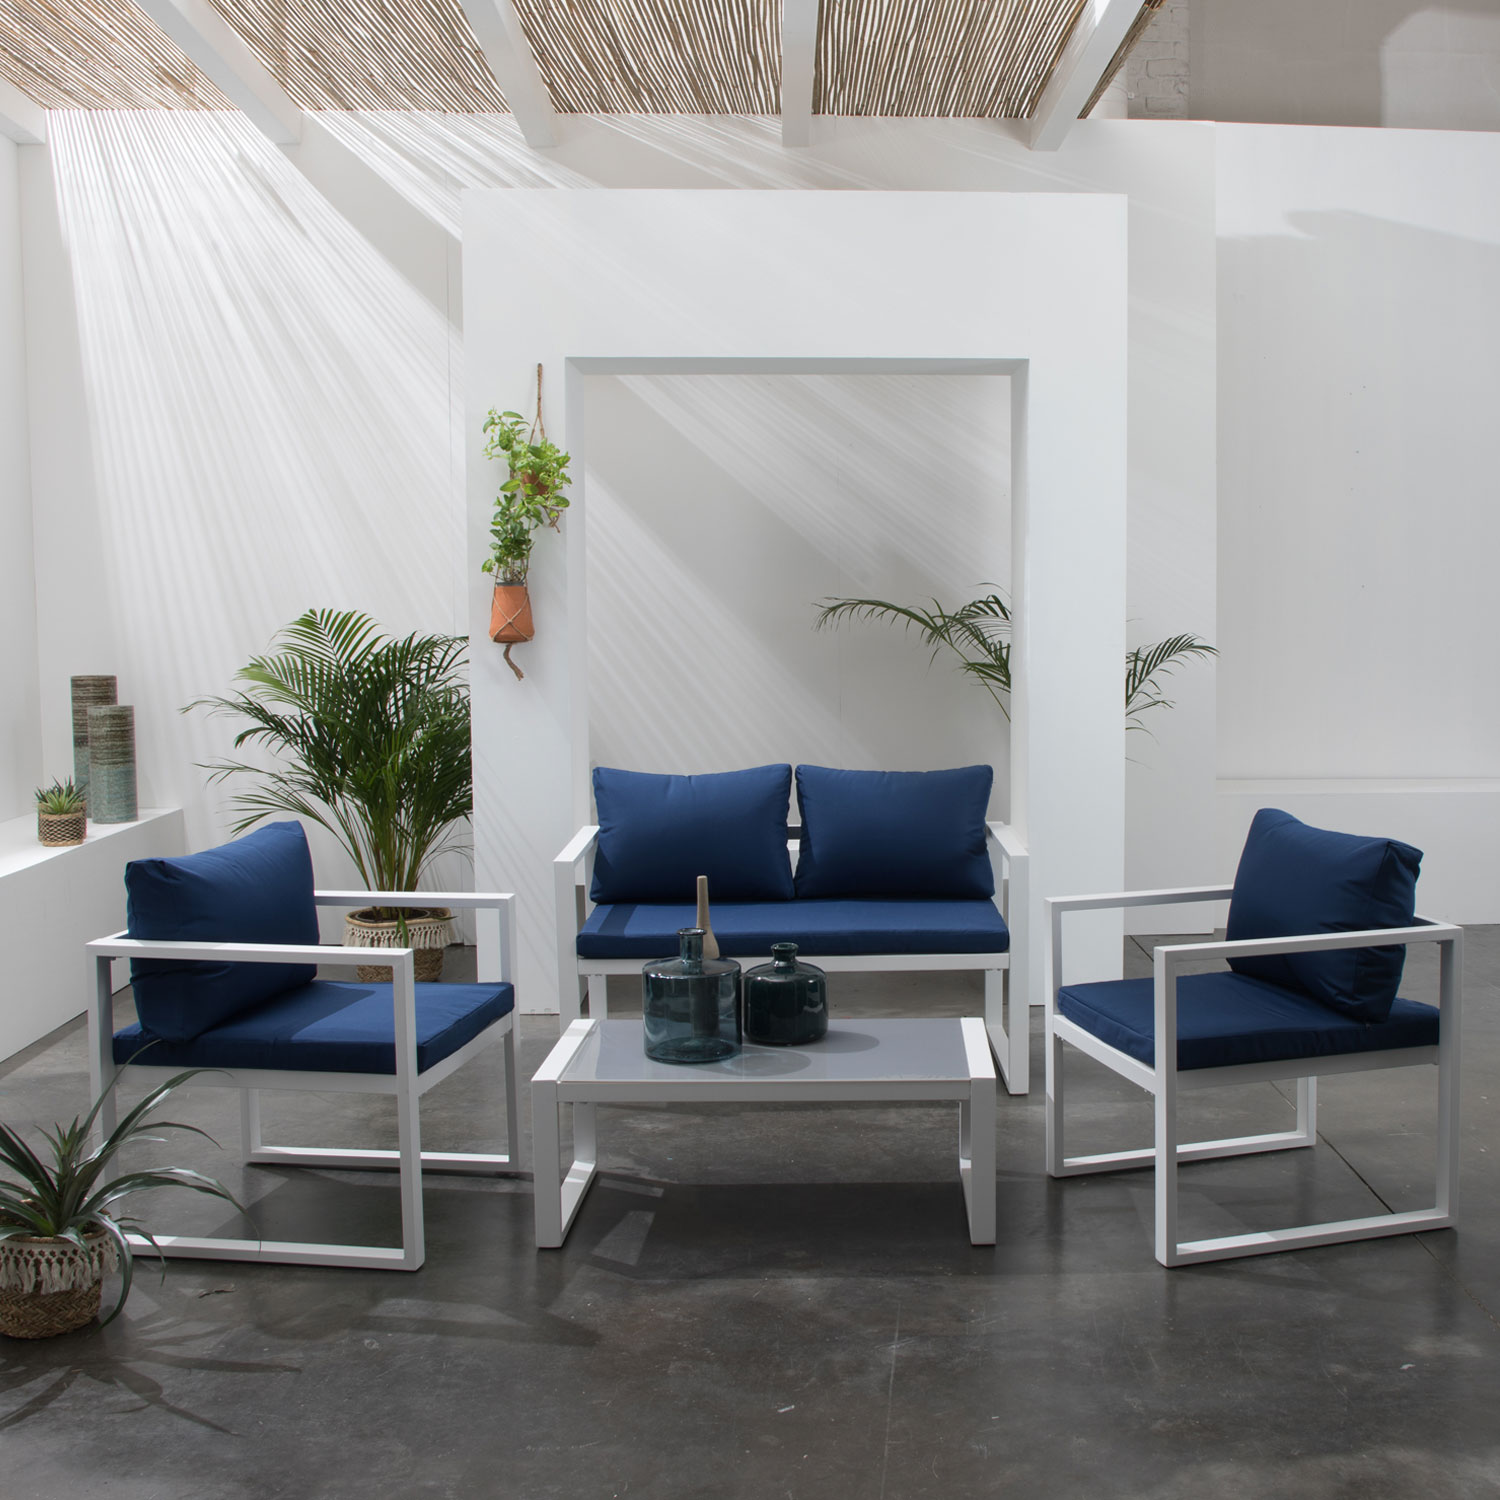 Gartenmöbel IBIZA aus blauem Stoff 4-Sitzer - Weißaluminium